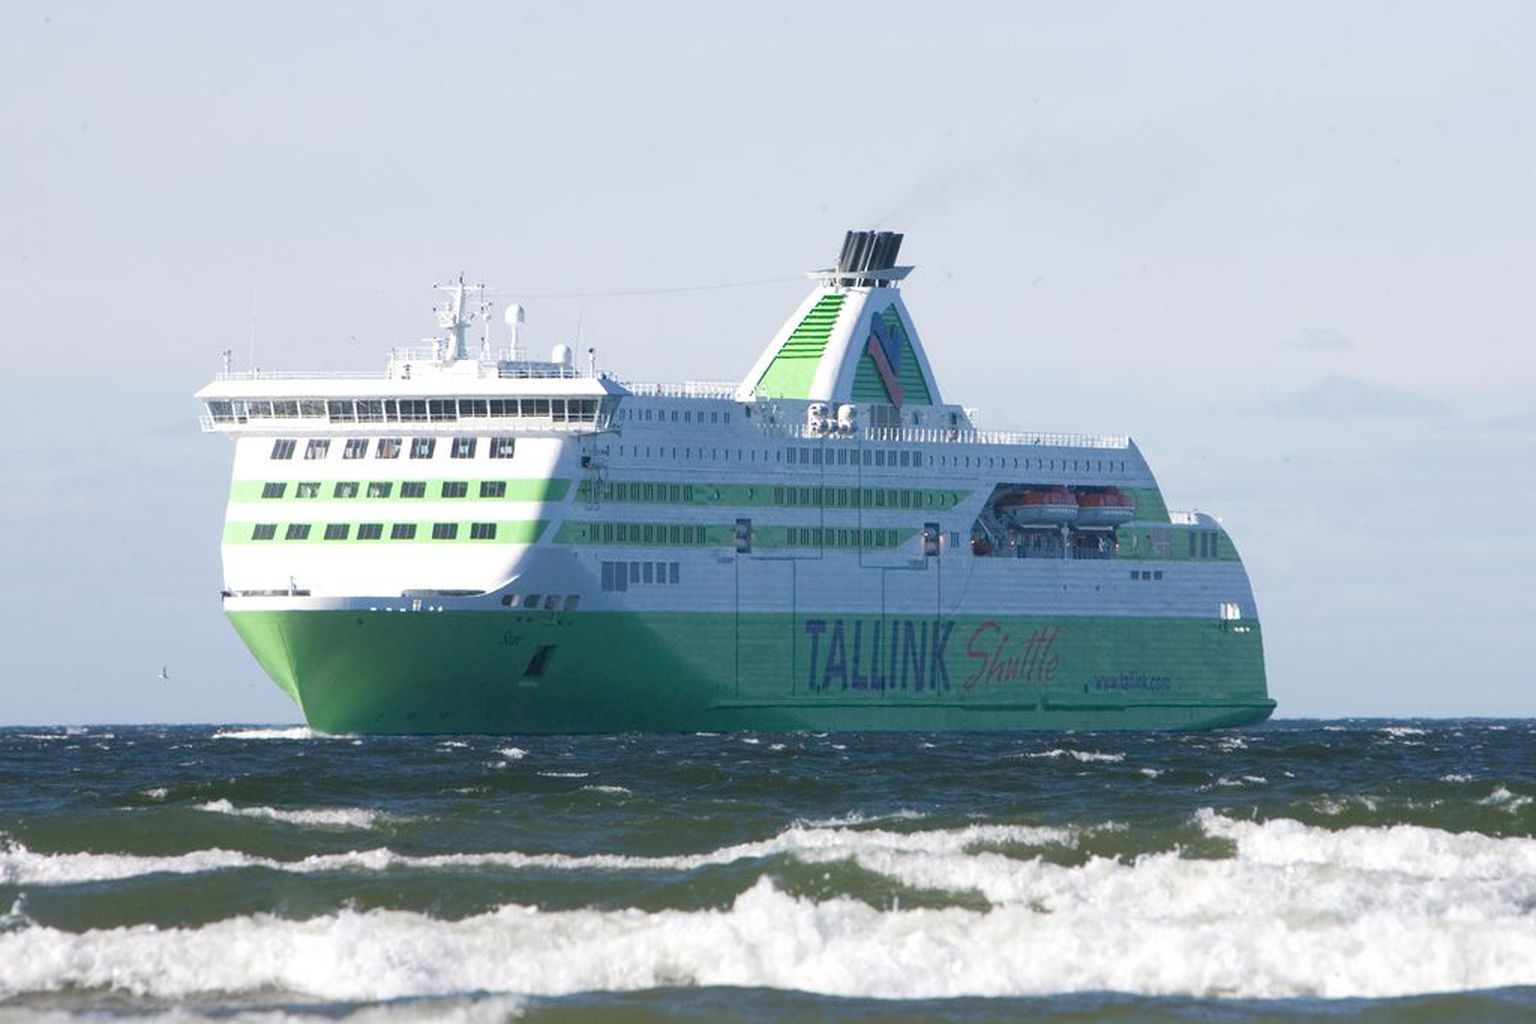 Tallinki Star.